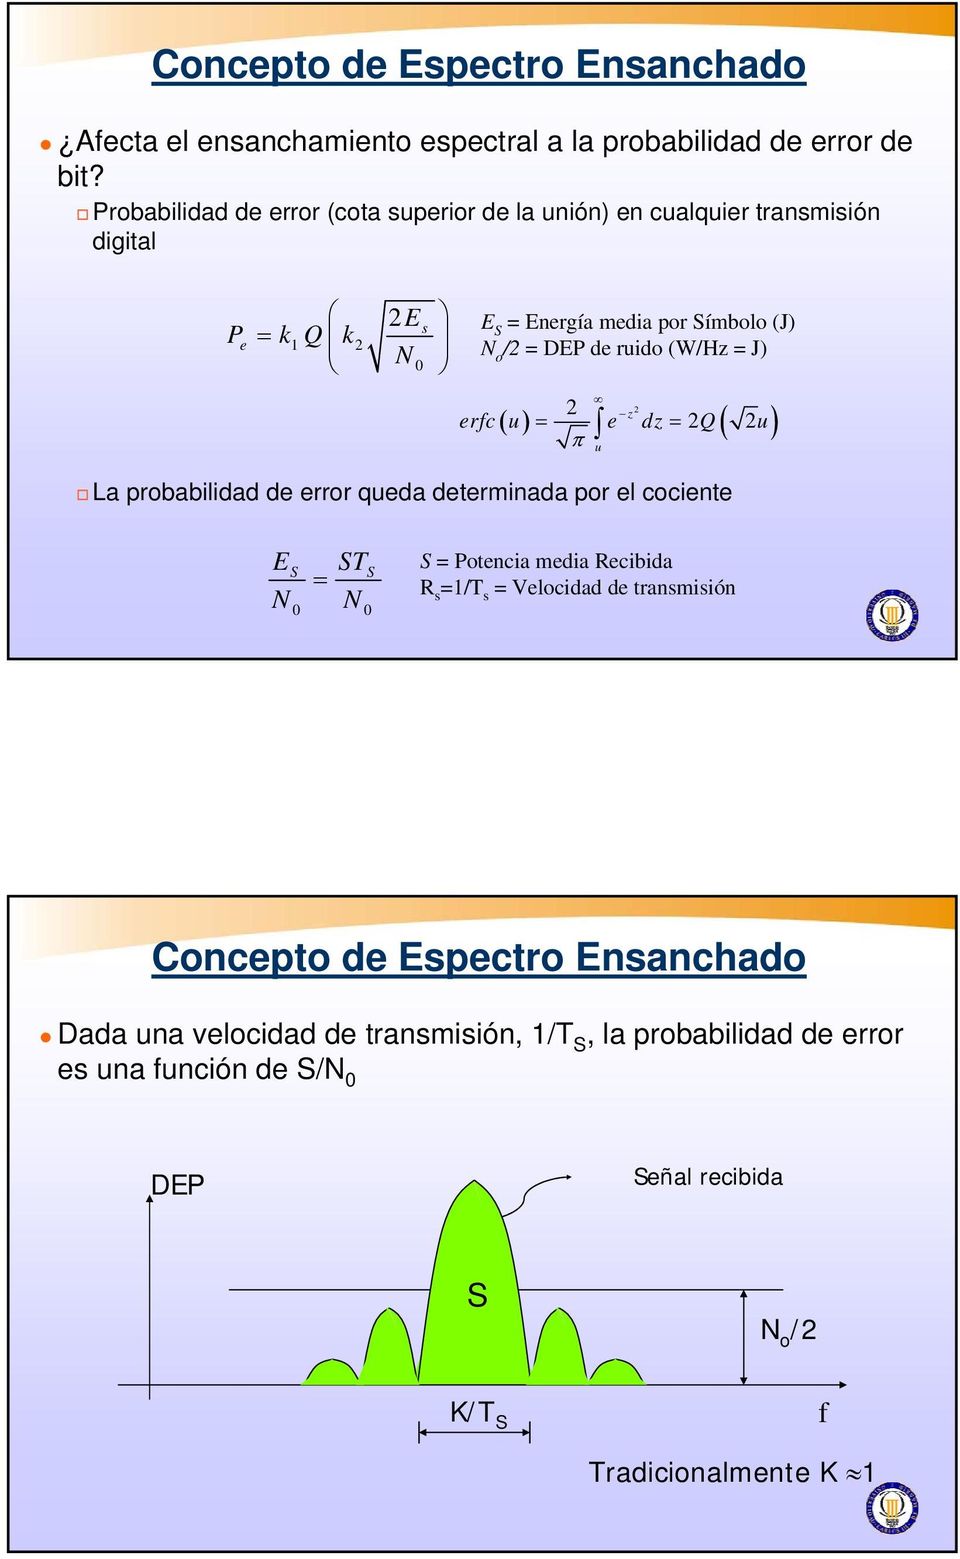 ruido (W/Hz = J) 2 2 z ( ) = = 2 ( 2 ) erc u e dz Q u π u La probabilidad de error queda determinada por el cociente E N T = N 0 0 = Potencia media